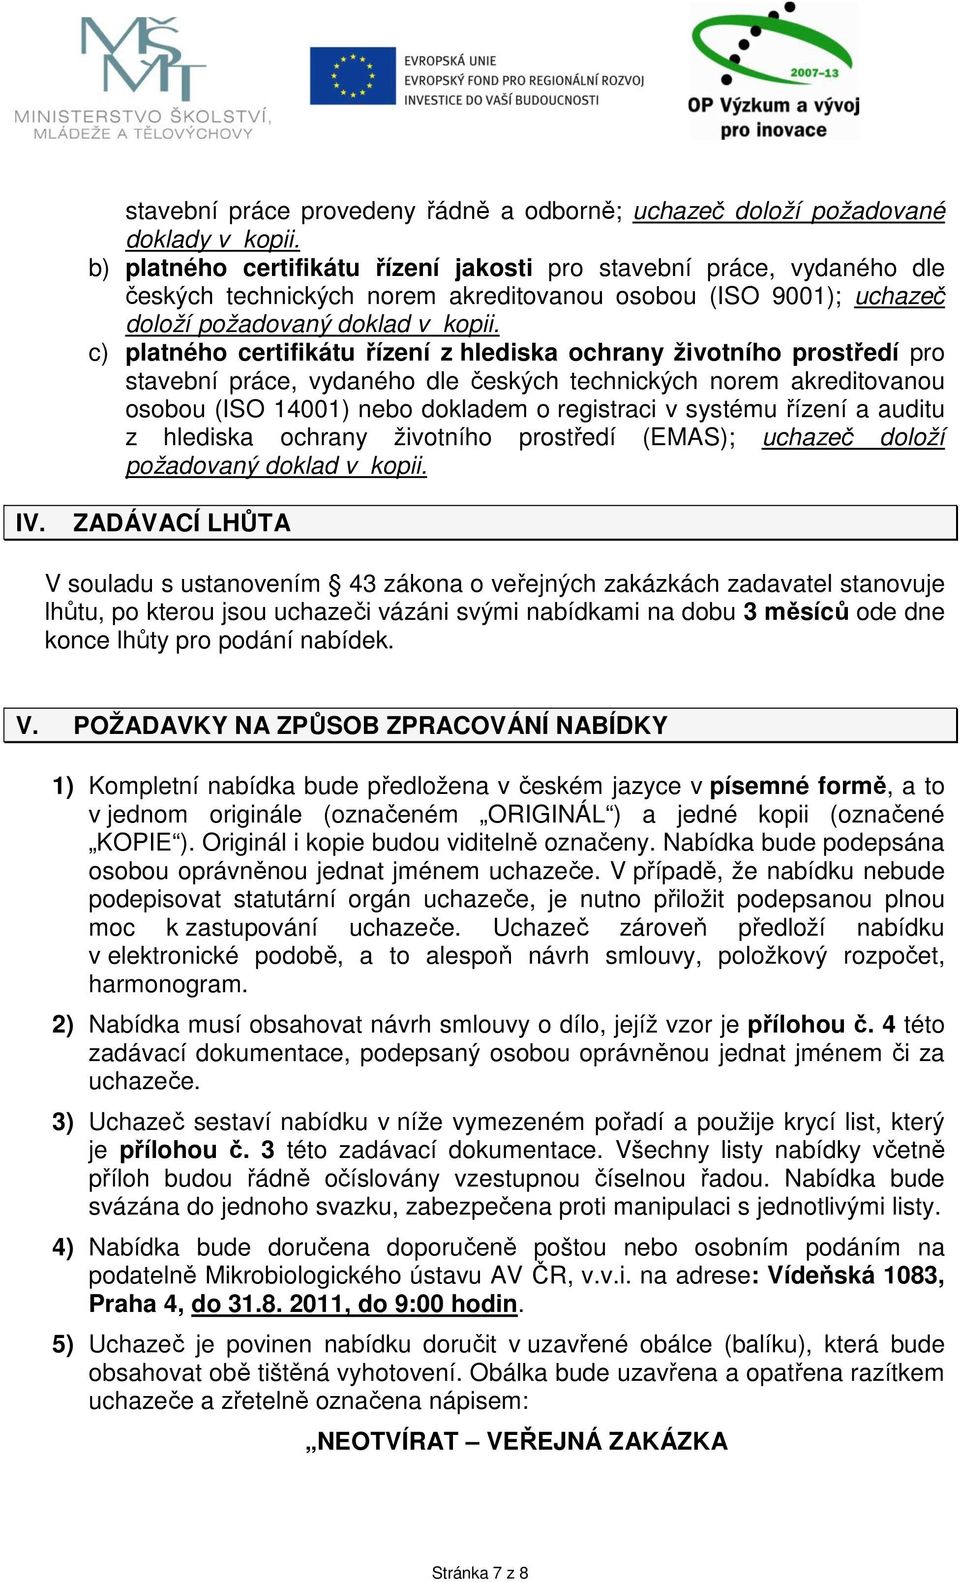 c) platného certifikátu řízení z hlediska ochrany životního prostředí pro stavební práce, vydaného dle českých technických norem akreditovanou osobou (ISO 14001) nebo dokladem o registraci v systému